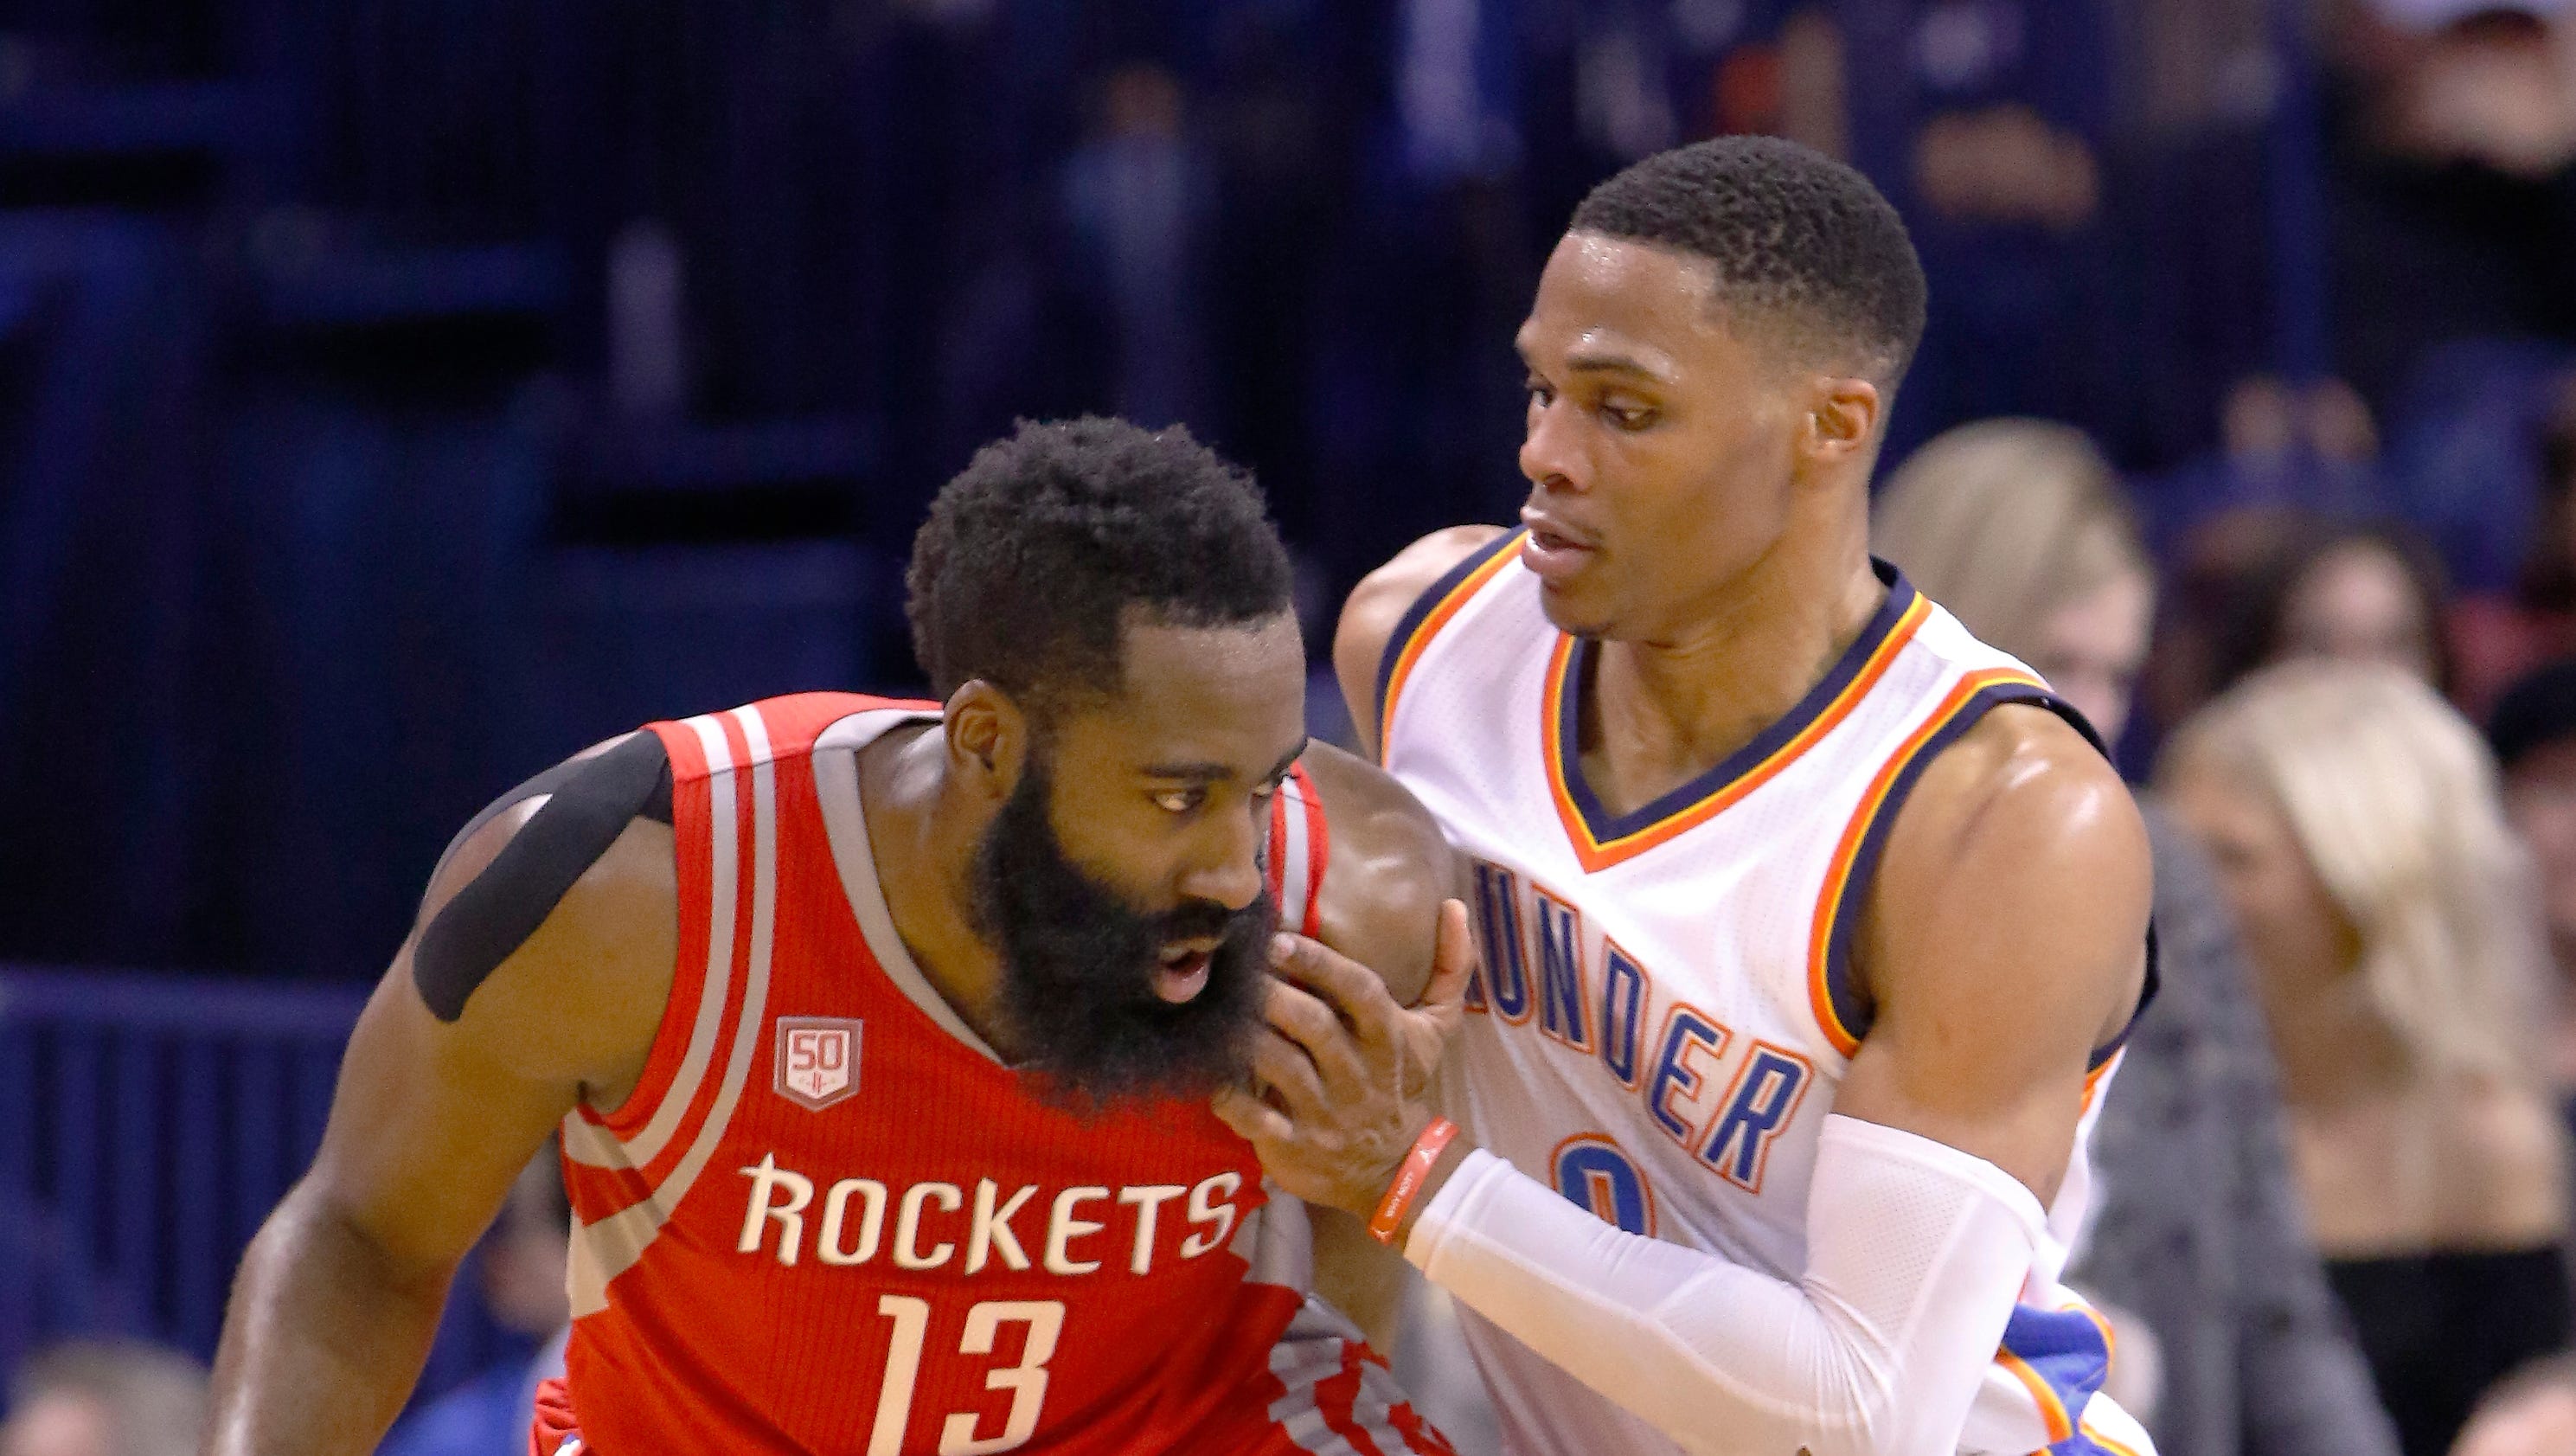 Week 6 NBA MVP race: Westbrook leads, Harden close behind